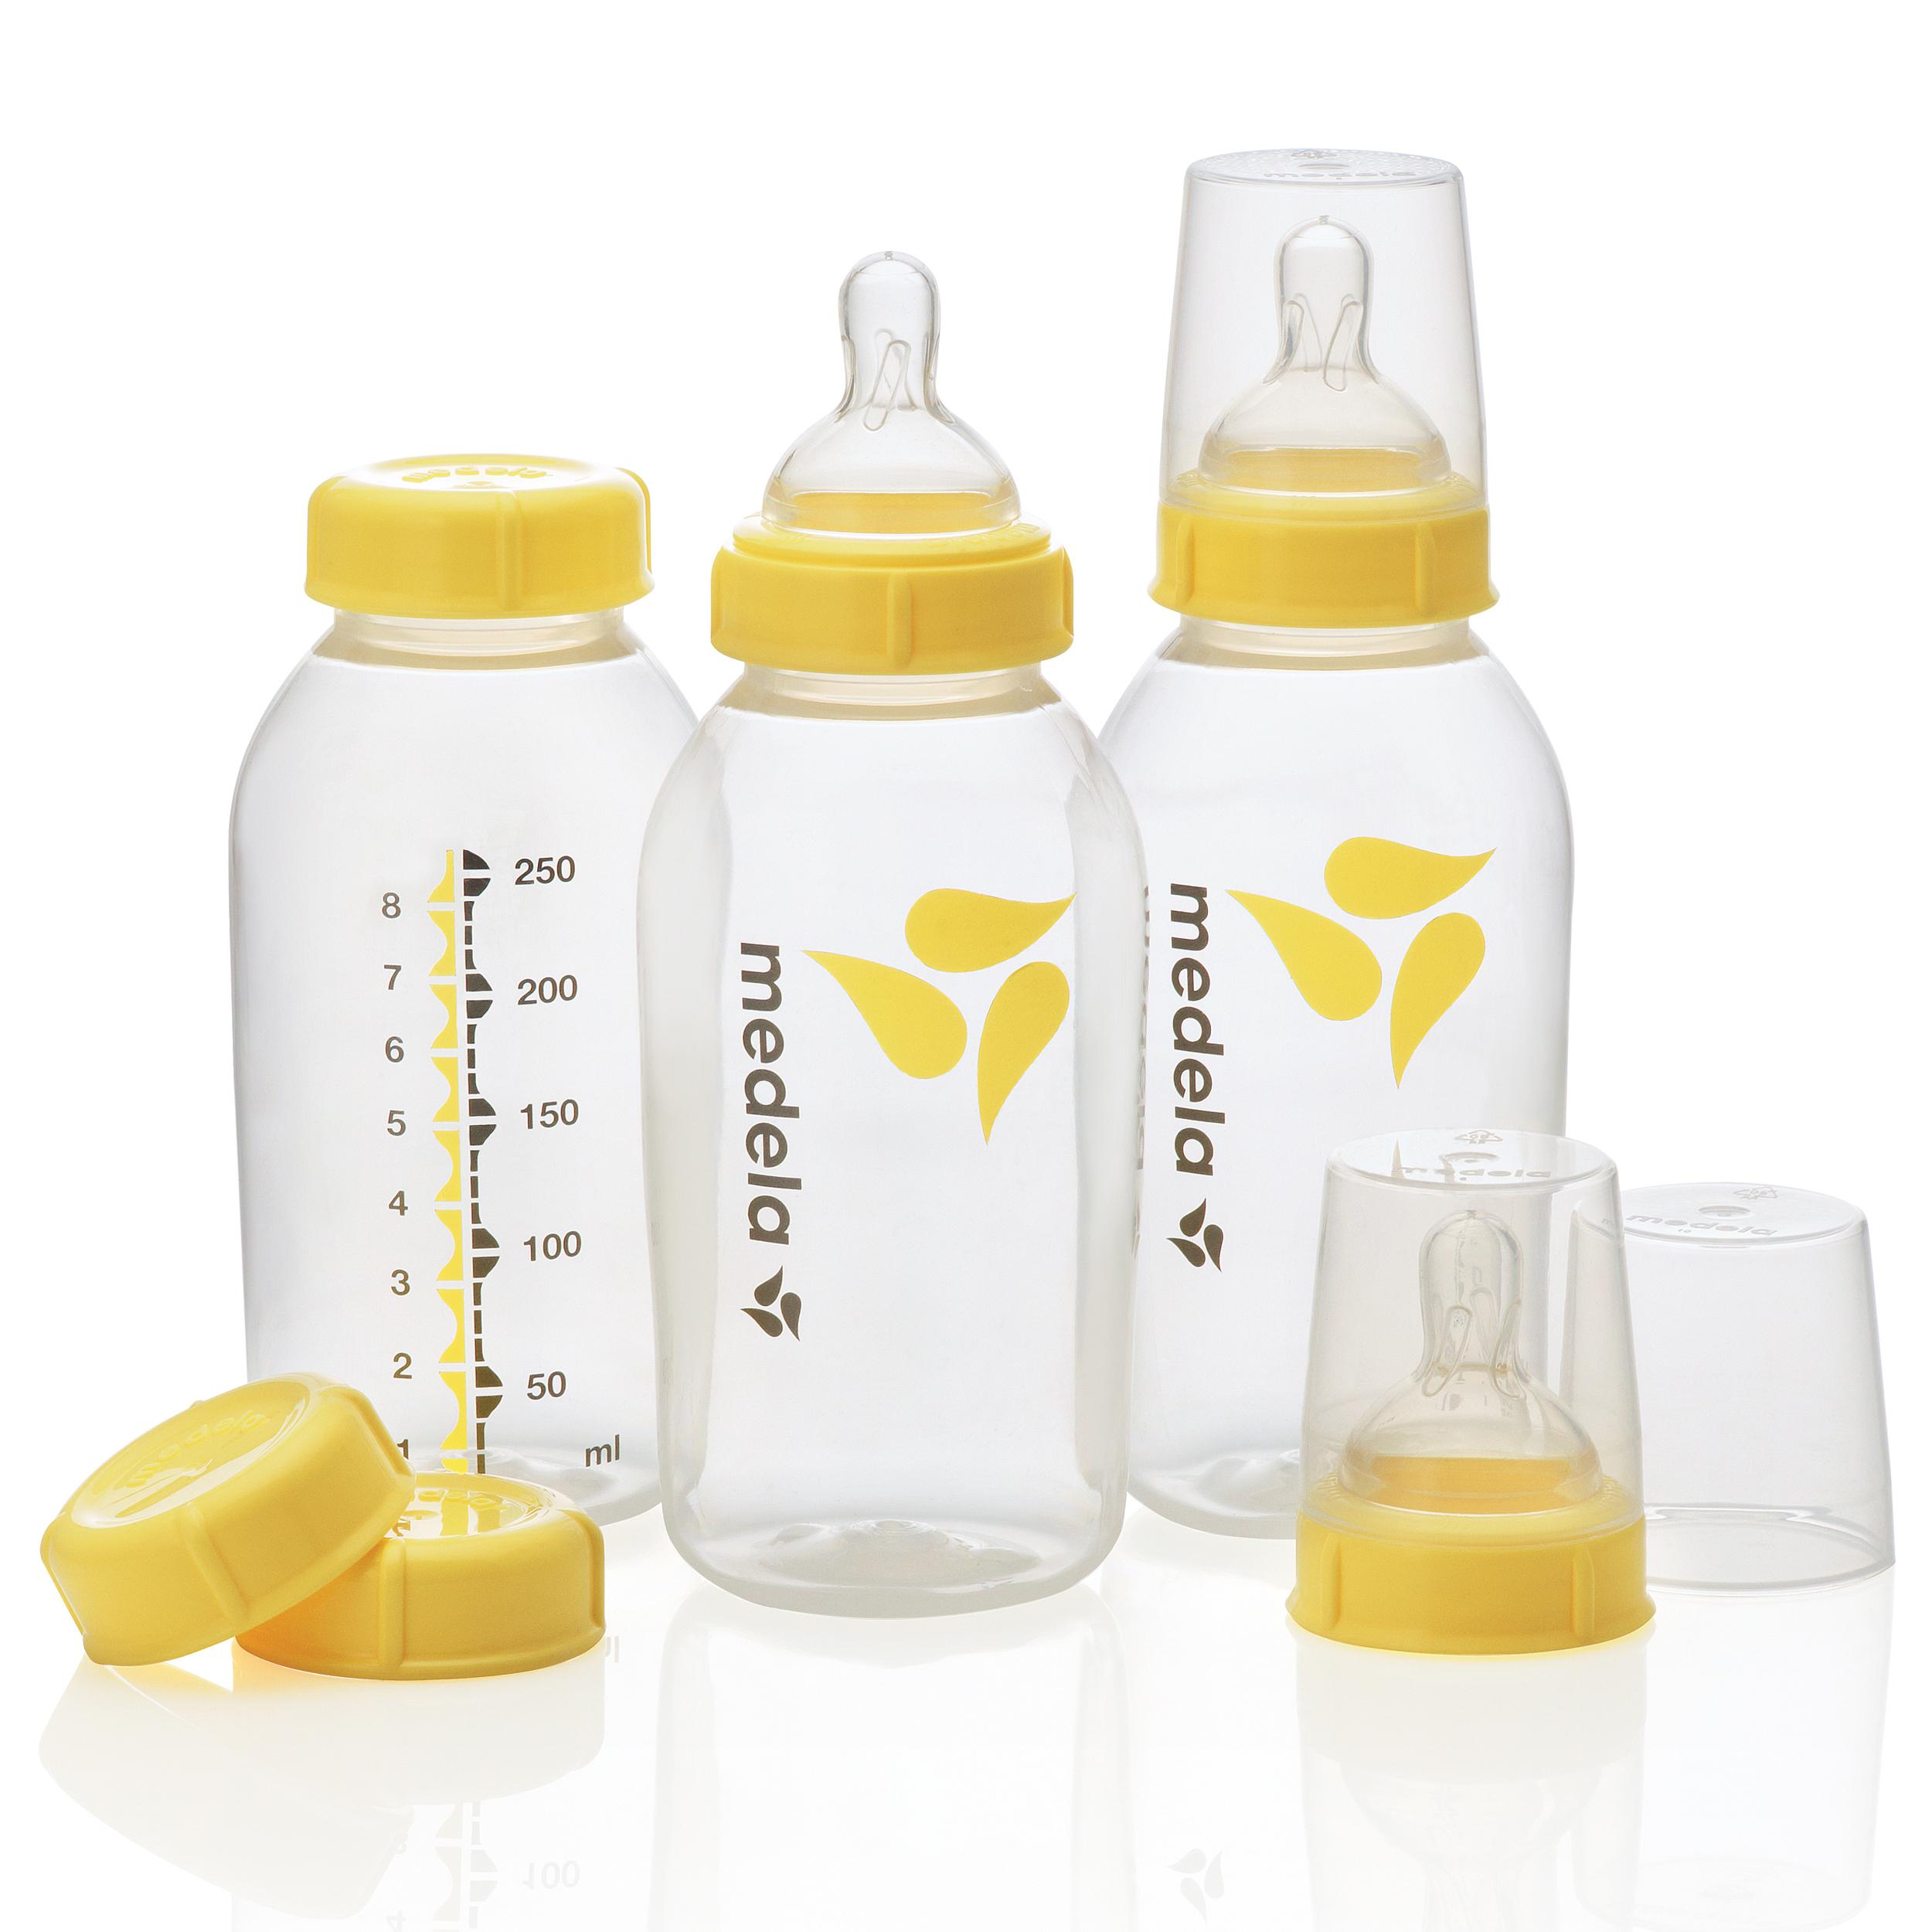 Amazon.com : Medela Breast Milk Bottle Set, 8 Ounce : Baby Bottles ...